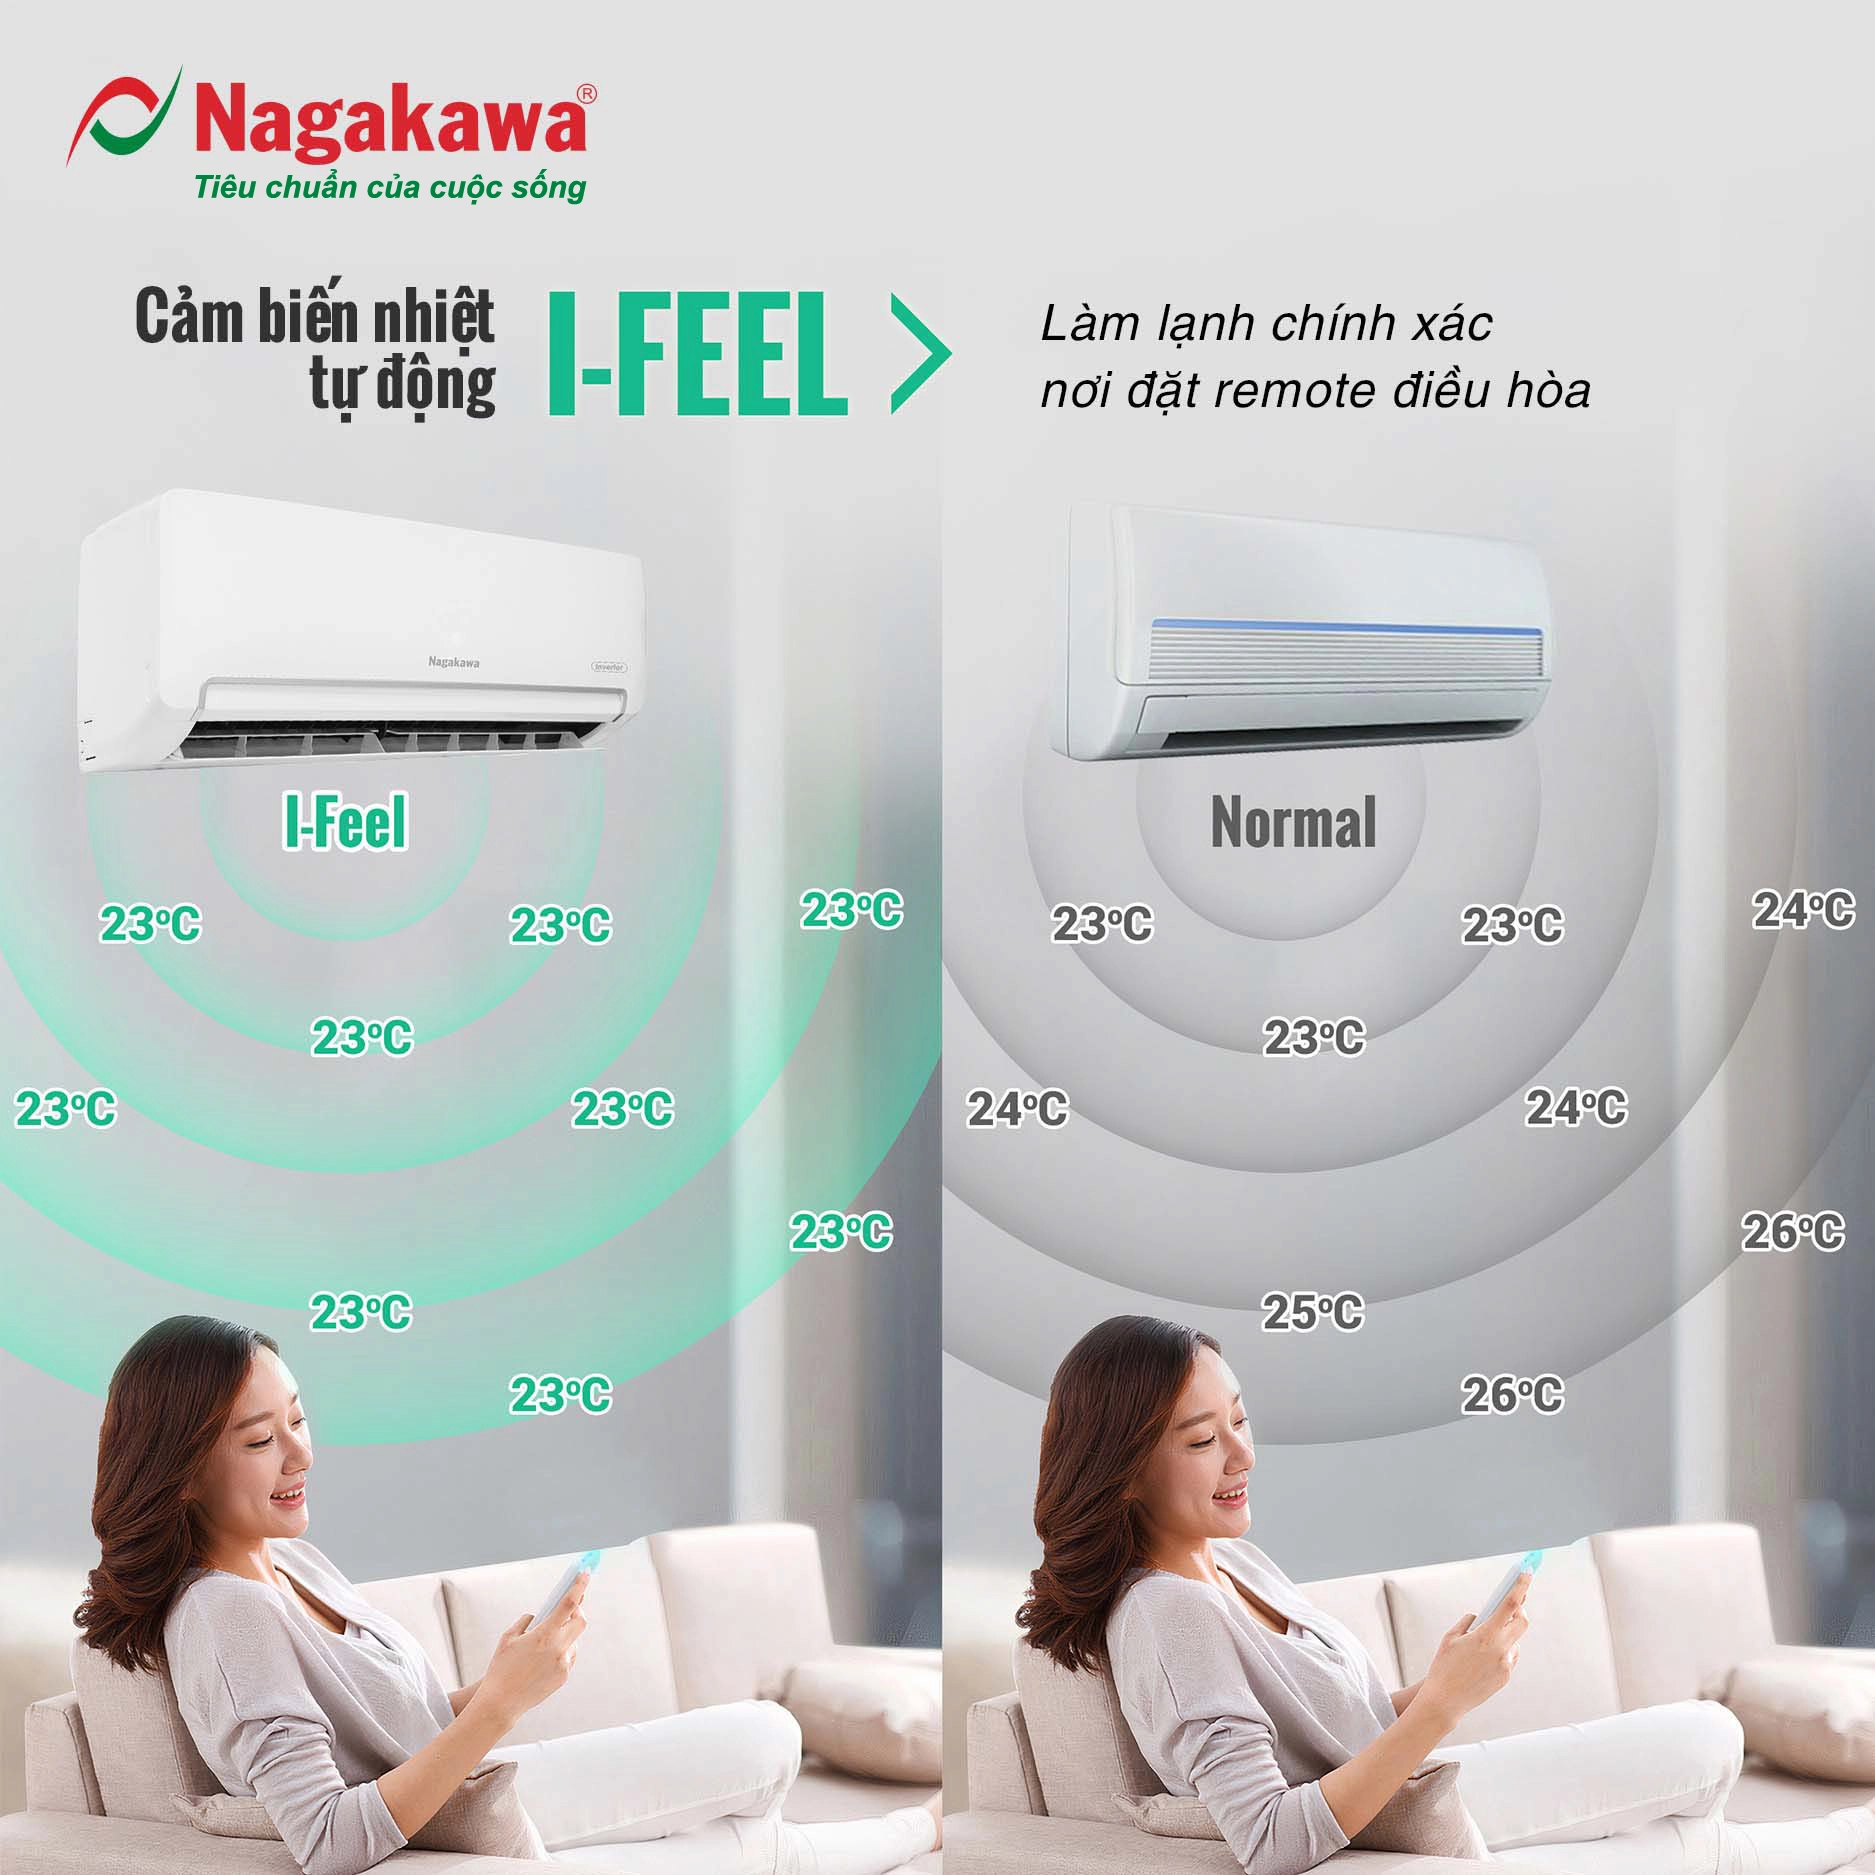 Ngoài ra nhiều hãng máy lạnh còn có chế độ Ifeel giúp điều hòa nhiệt độ trong phòng đồng đều hơn